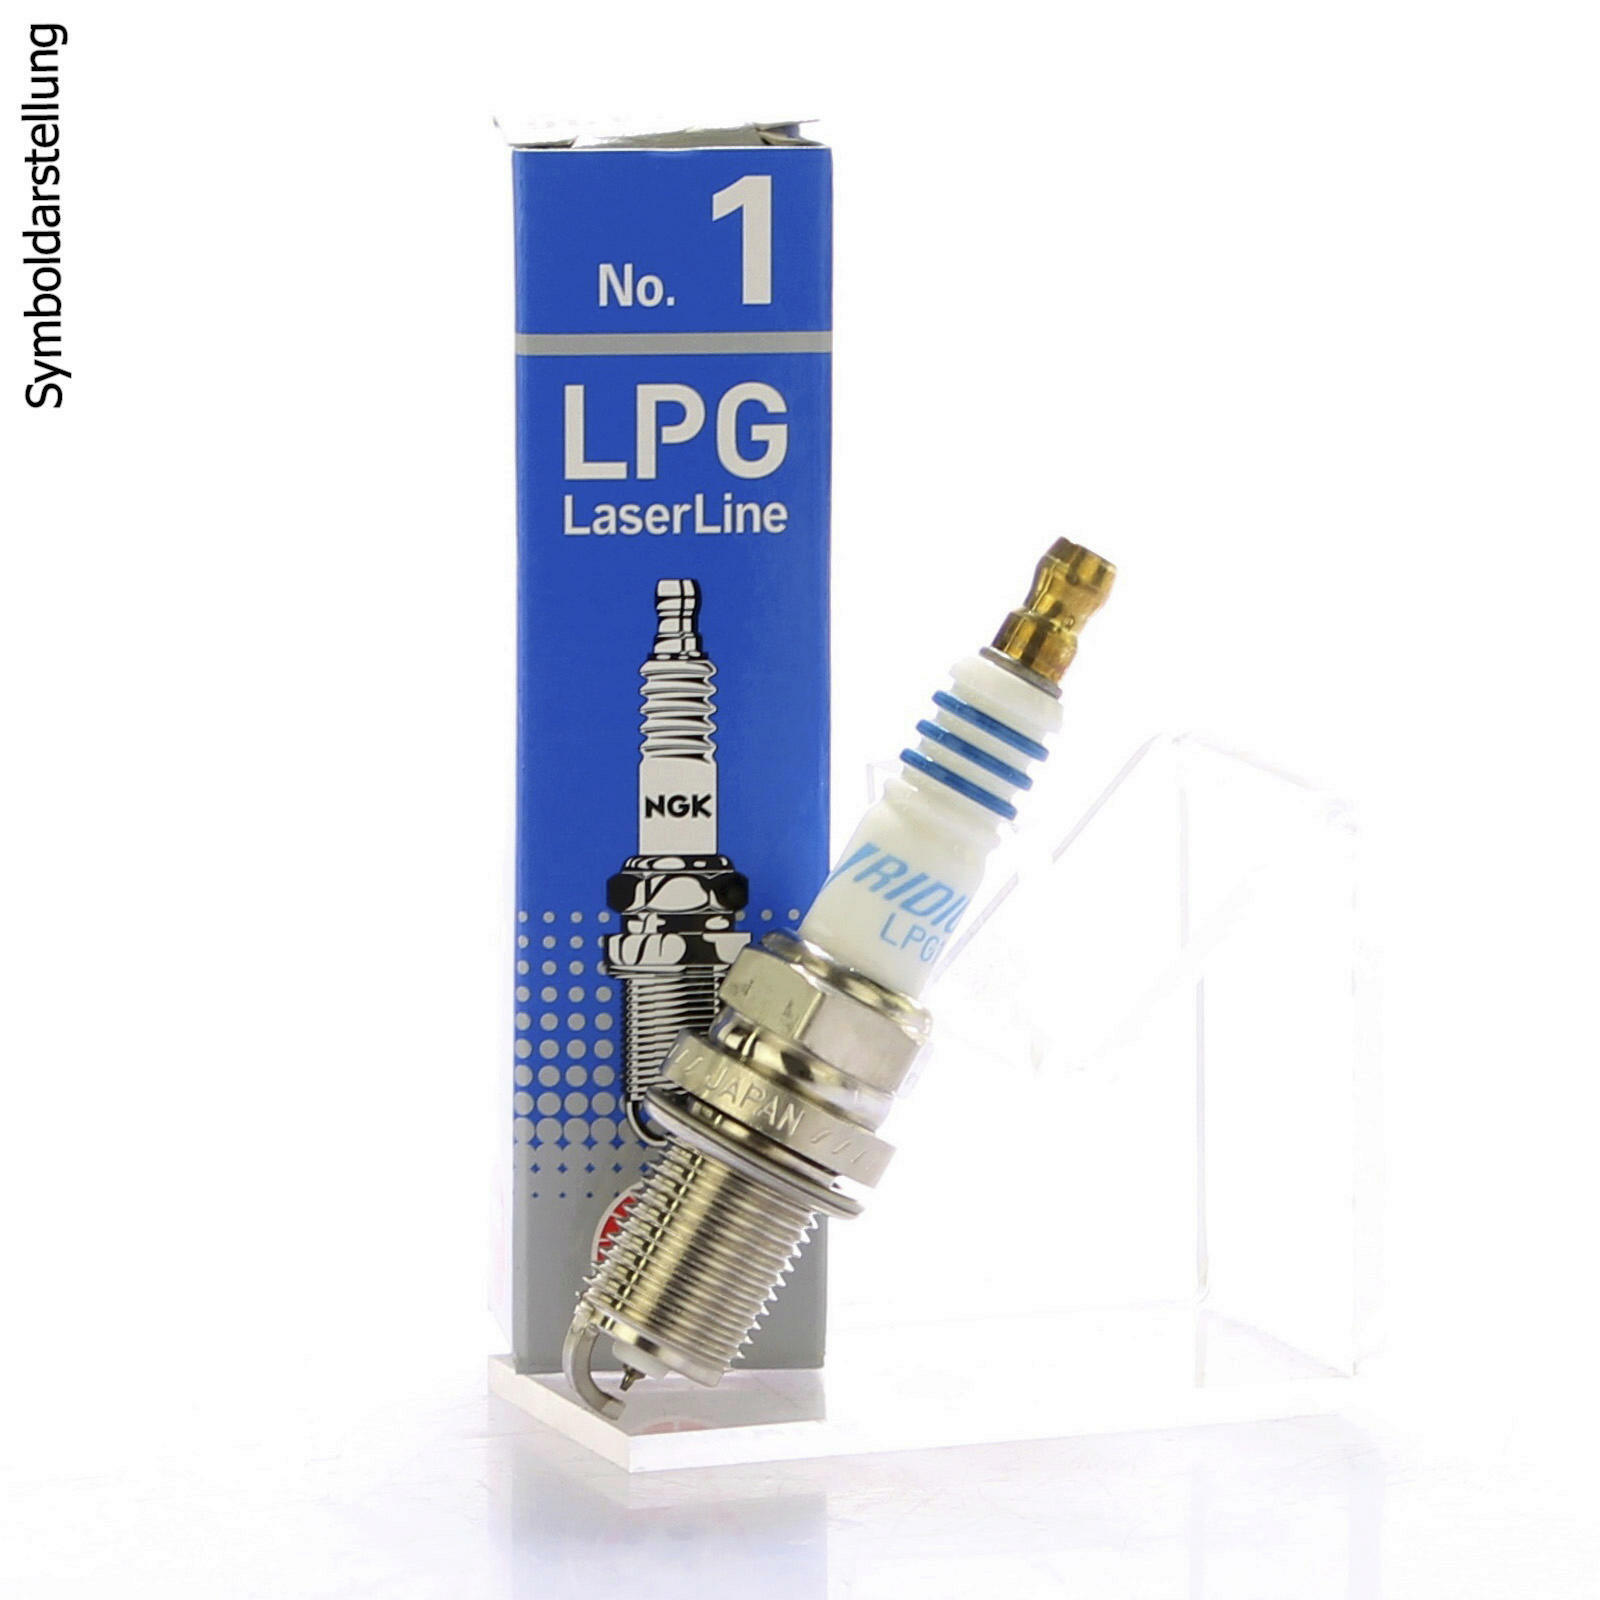 NGK Spark Plug LPG Laser Line